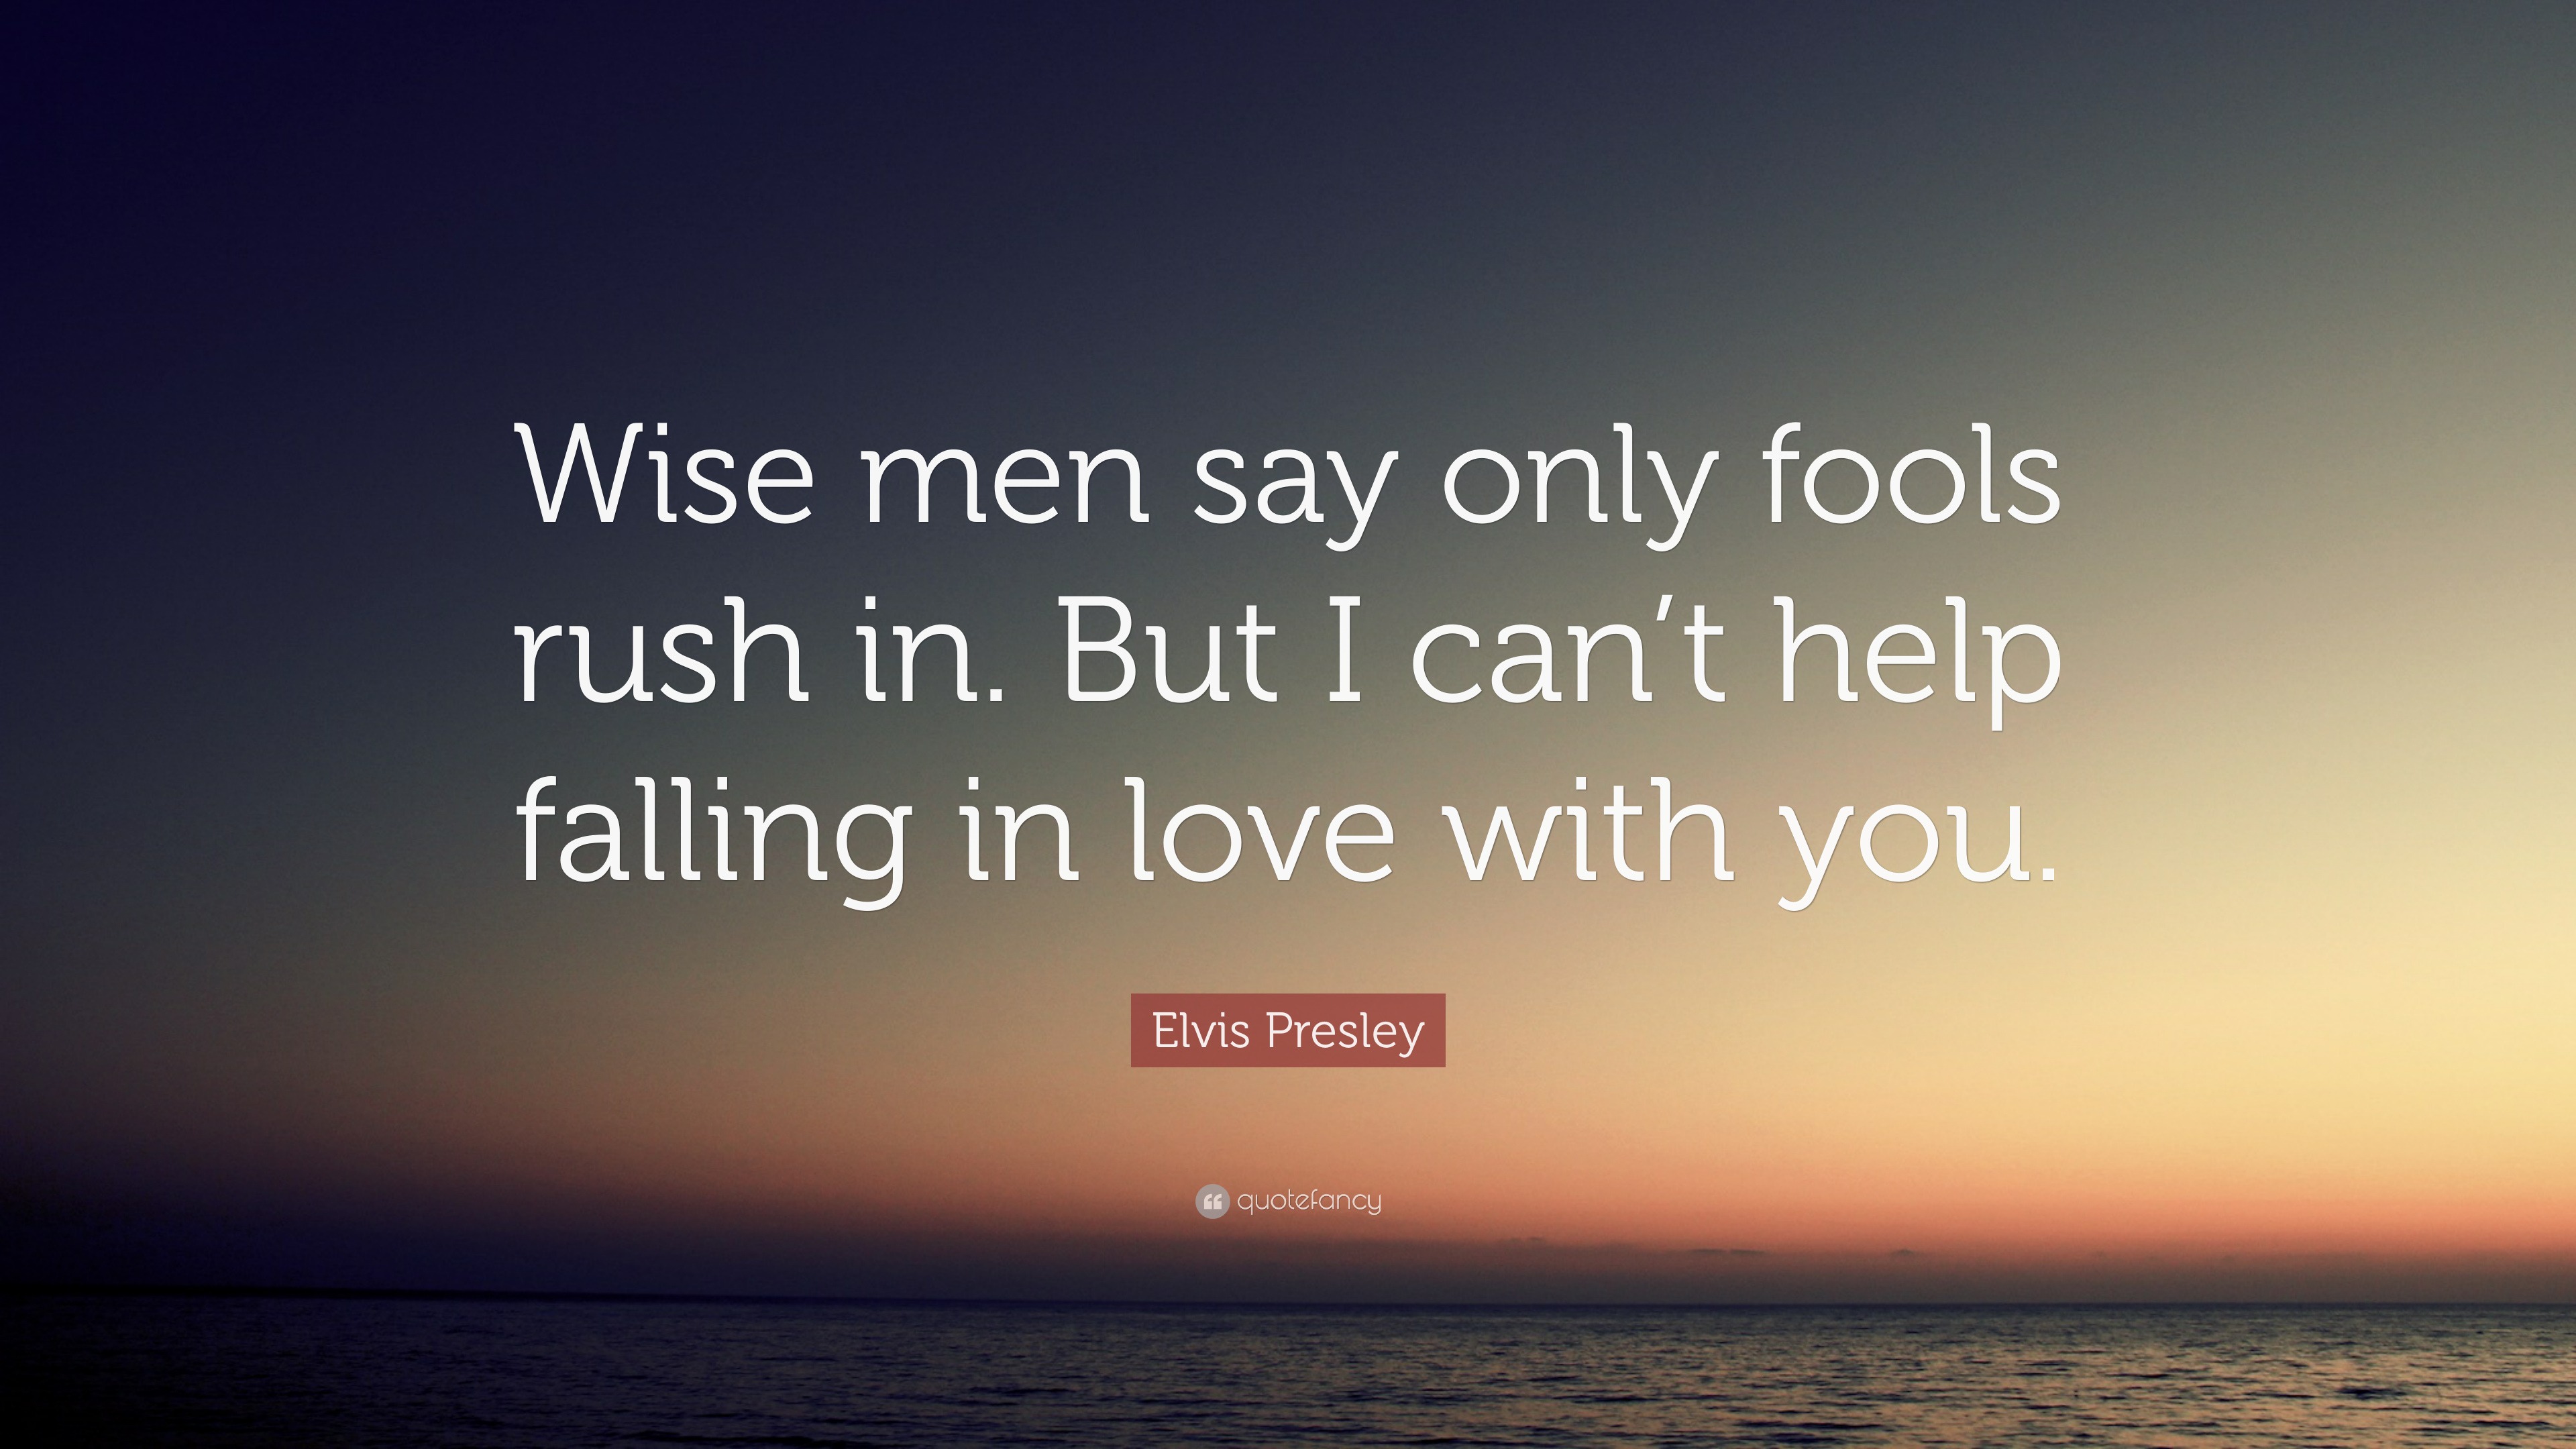 Káº¿t quáº£ hÃ¬nh áº£nh cho wise men say only fool rush in quote